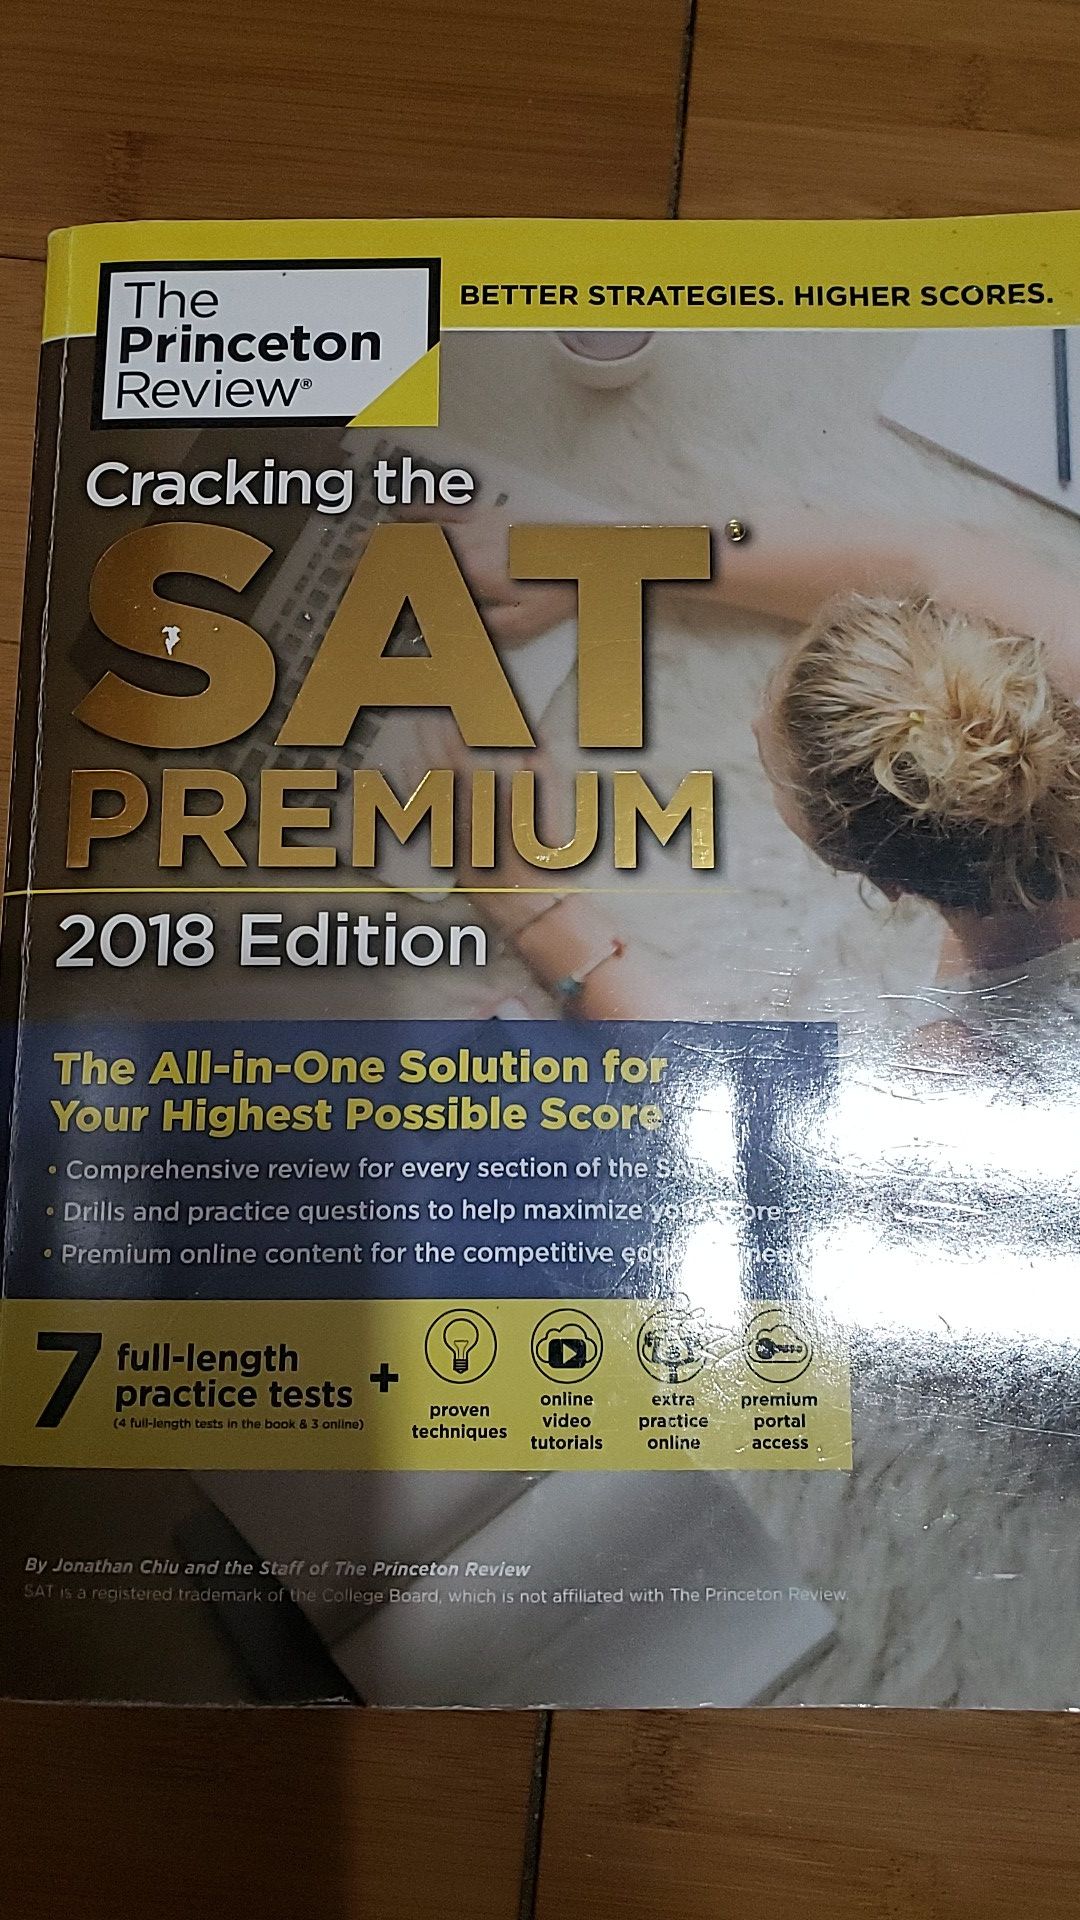 Cracking the SAT Premium 2018 Edition